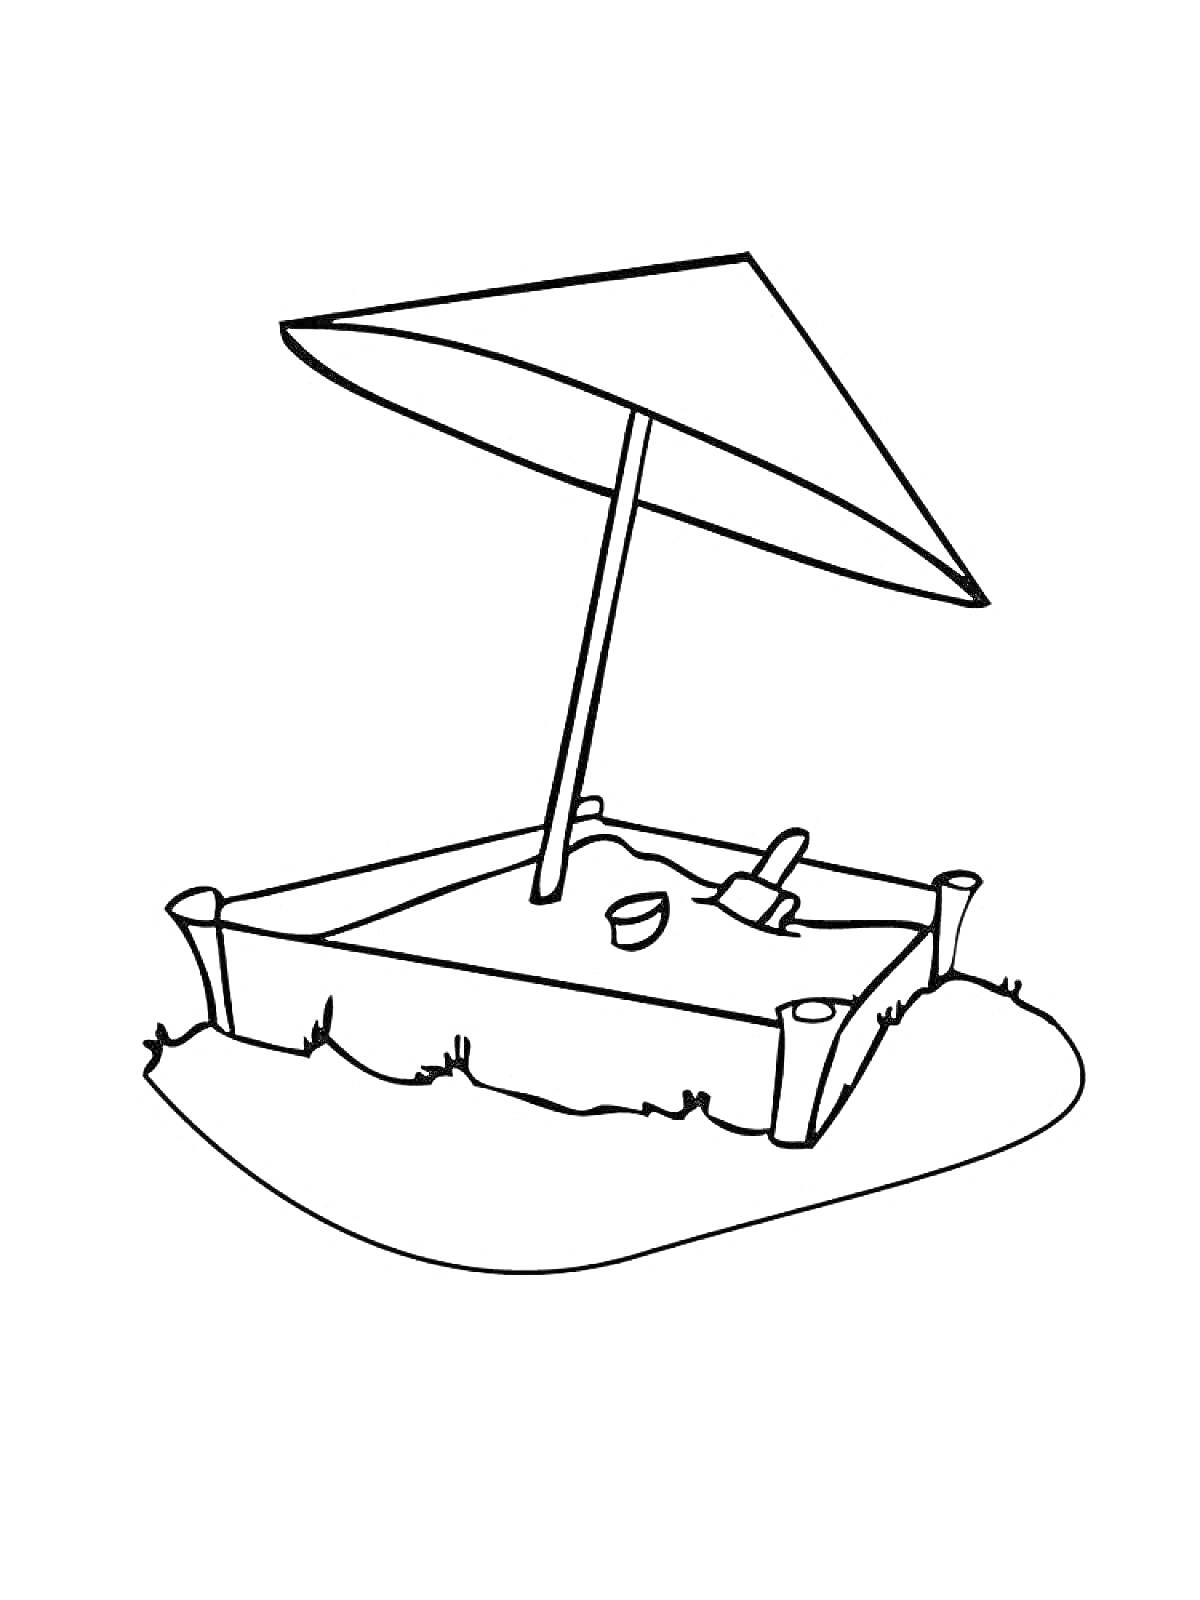 Раскраска Песочница с игрушками и зонтиком. На изображении песочница с четырьмя столбиками по углам, зонтик, ведёрко и лопатка.